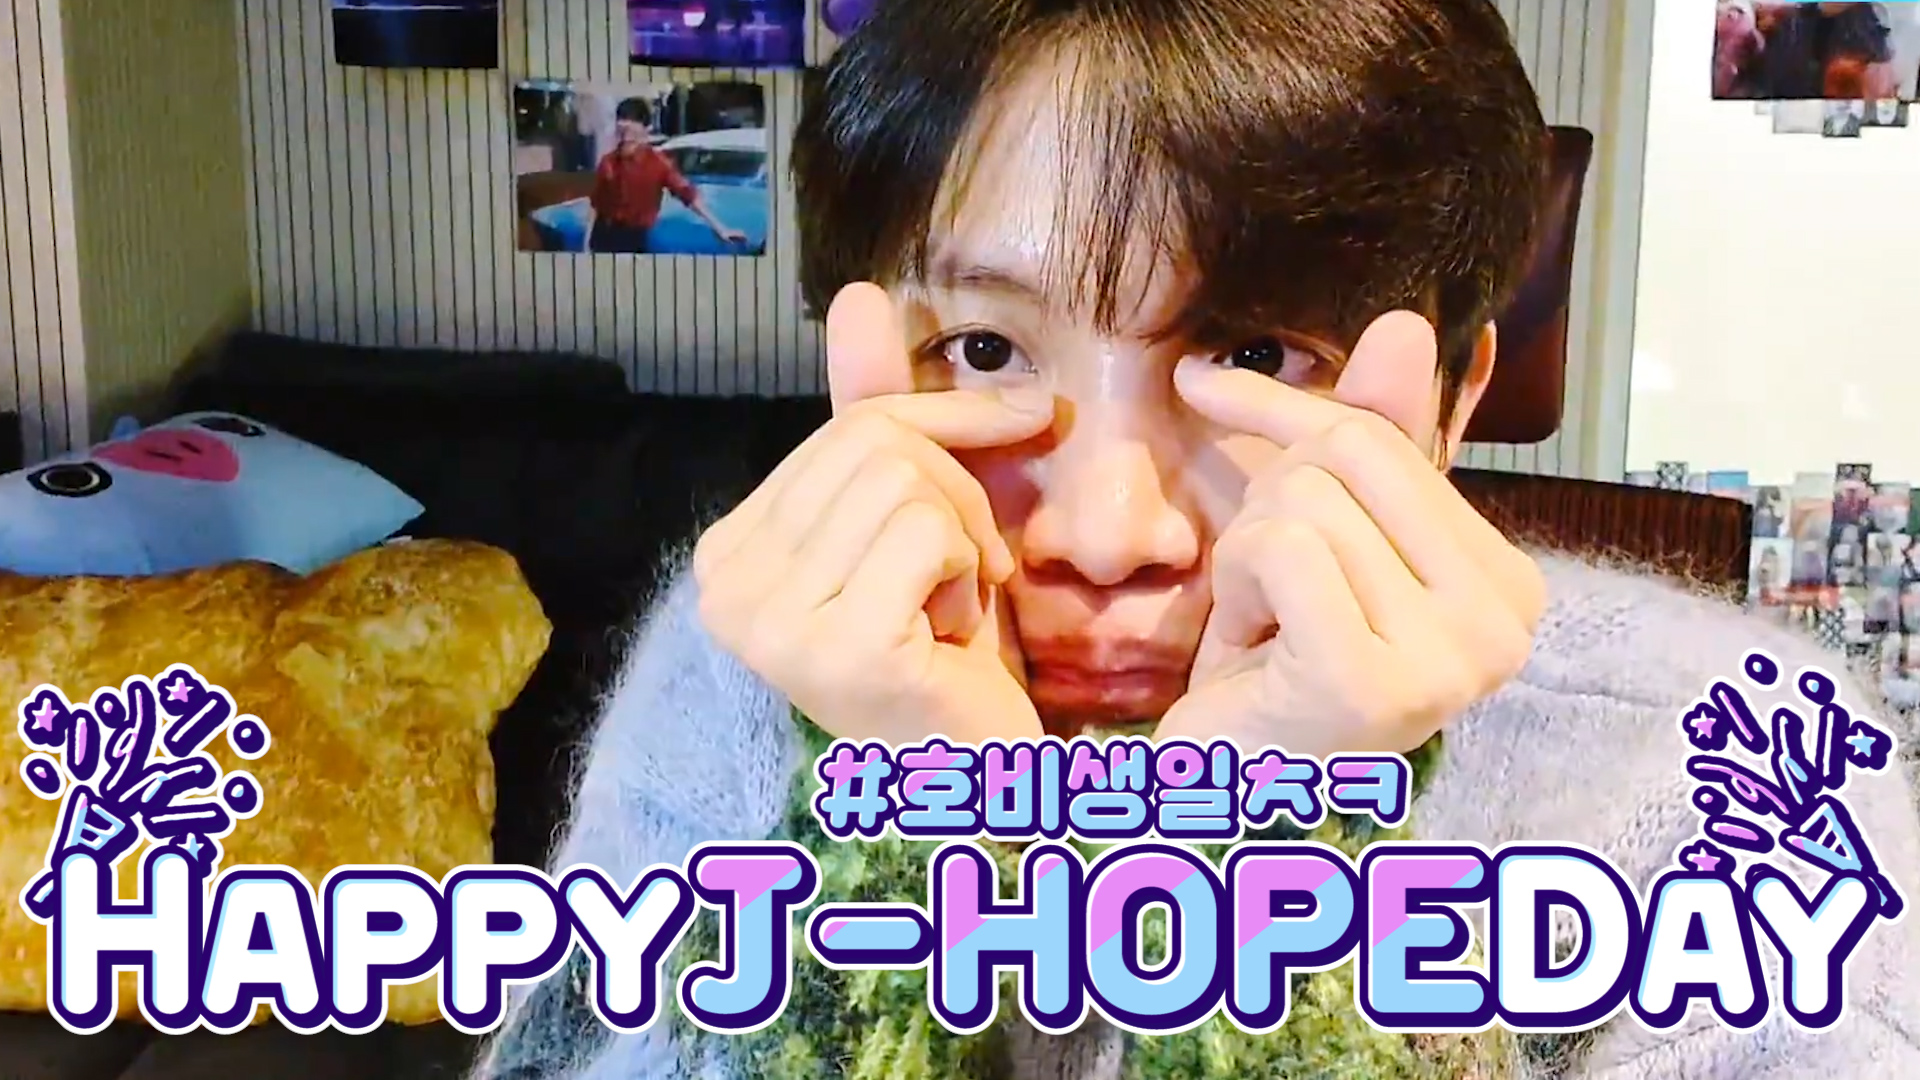 [BTS] 호석이 덕에 하루하루가 기뻐서 웃다가 눈물샘에 석션💦 (HAPPY J-HOPE DAY!)